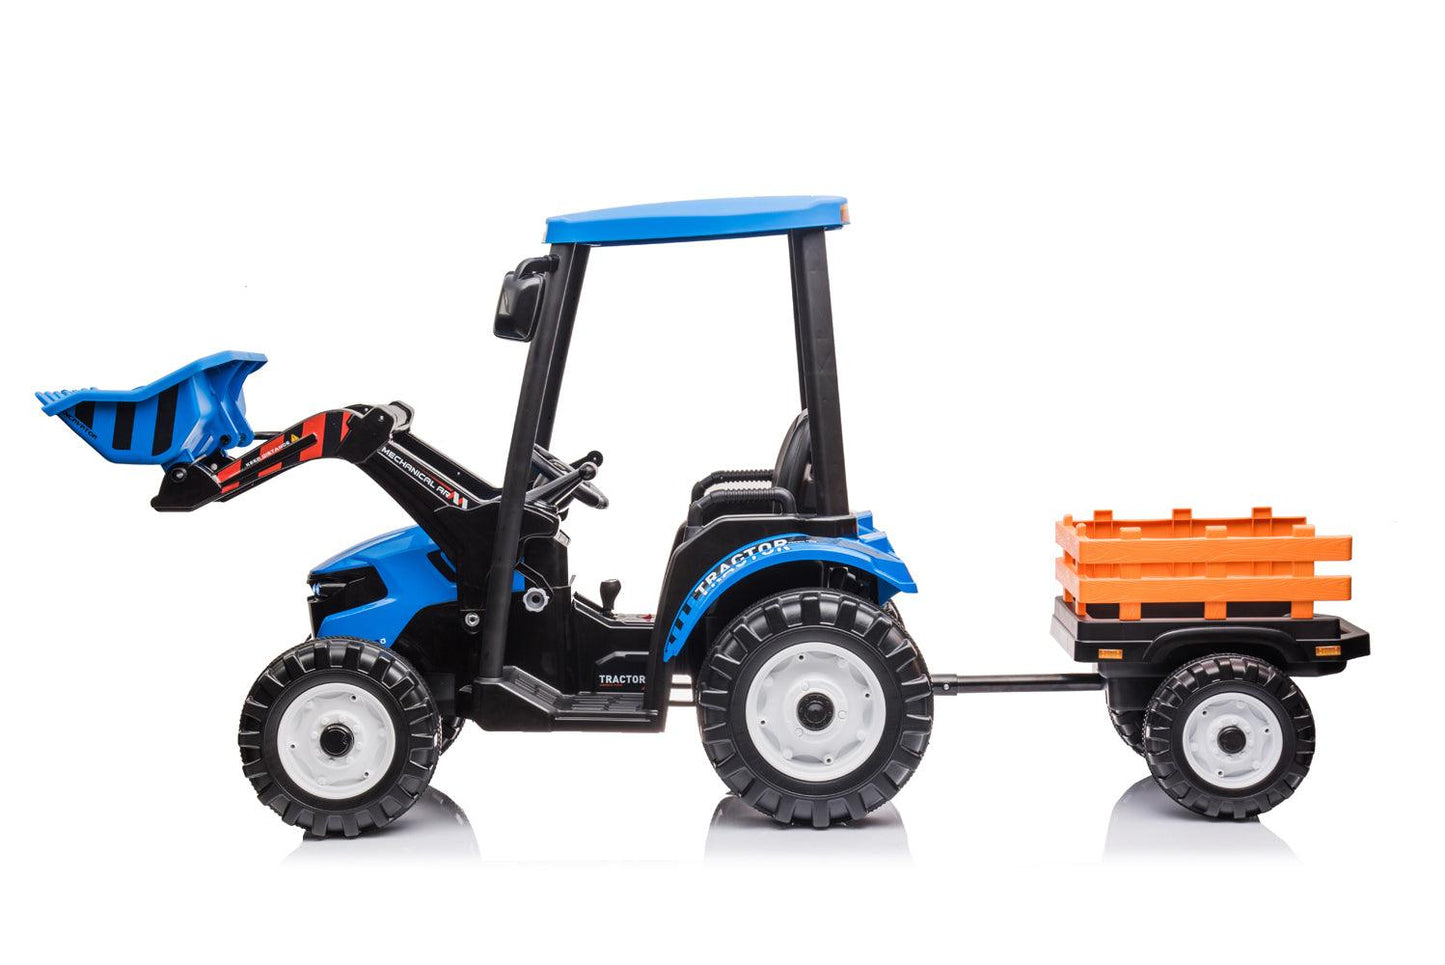 Elektro Kinder Traktor Pushdozer – Ein spannendes Abenteuer für junge Bauarbeiter - kidsdrive.net - Rideonkidcar - Elektroauto für Kinder - Geschenkidee - Kinderfahrzeug